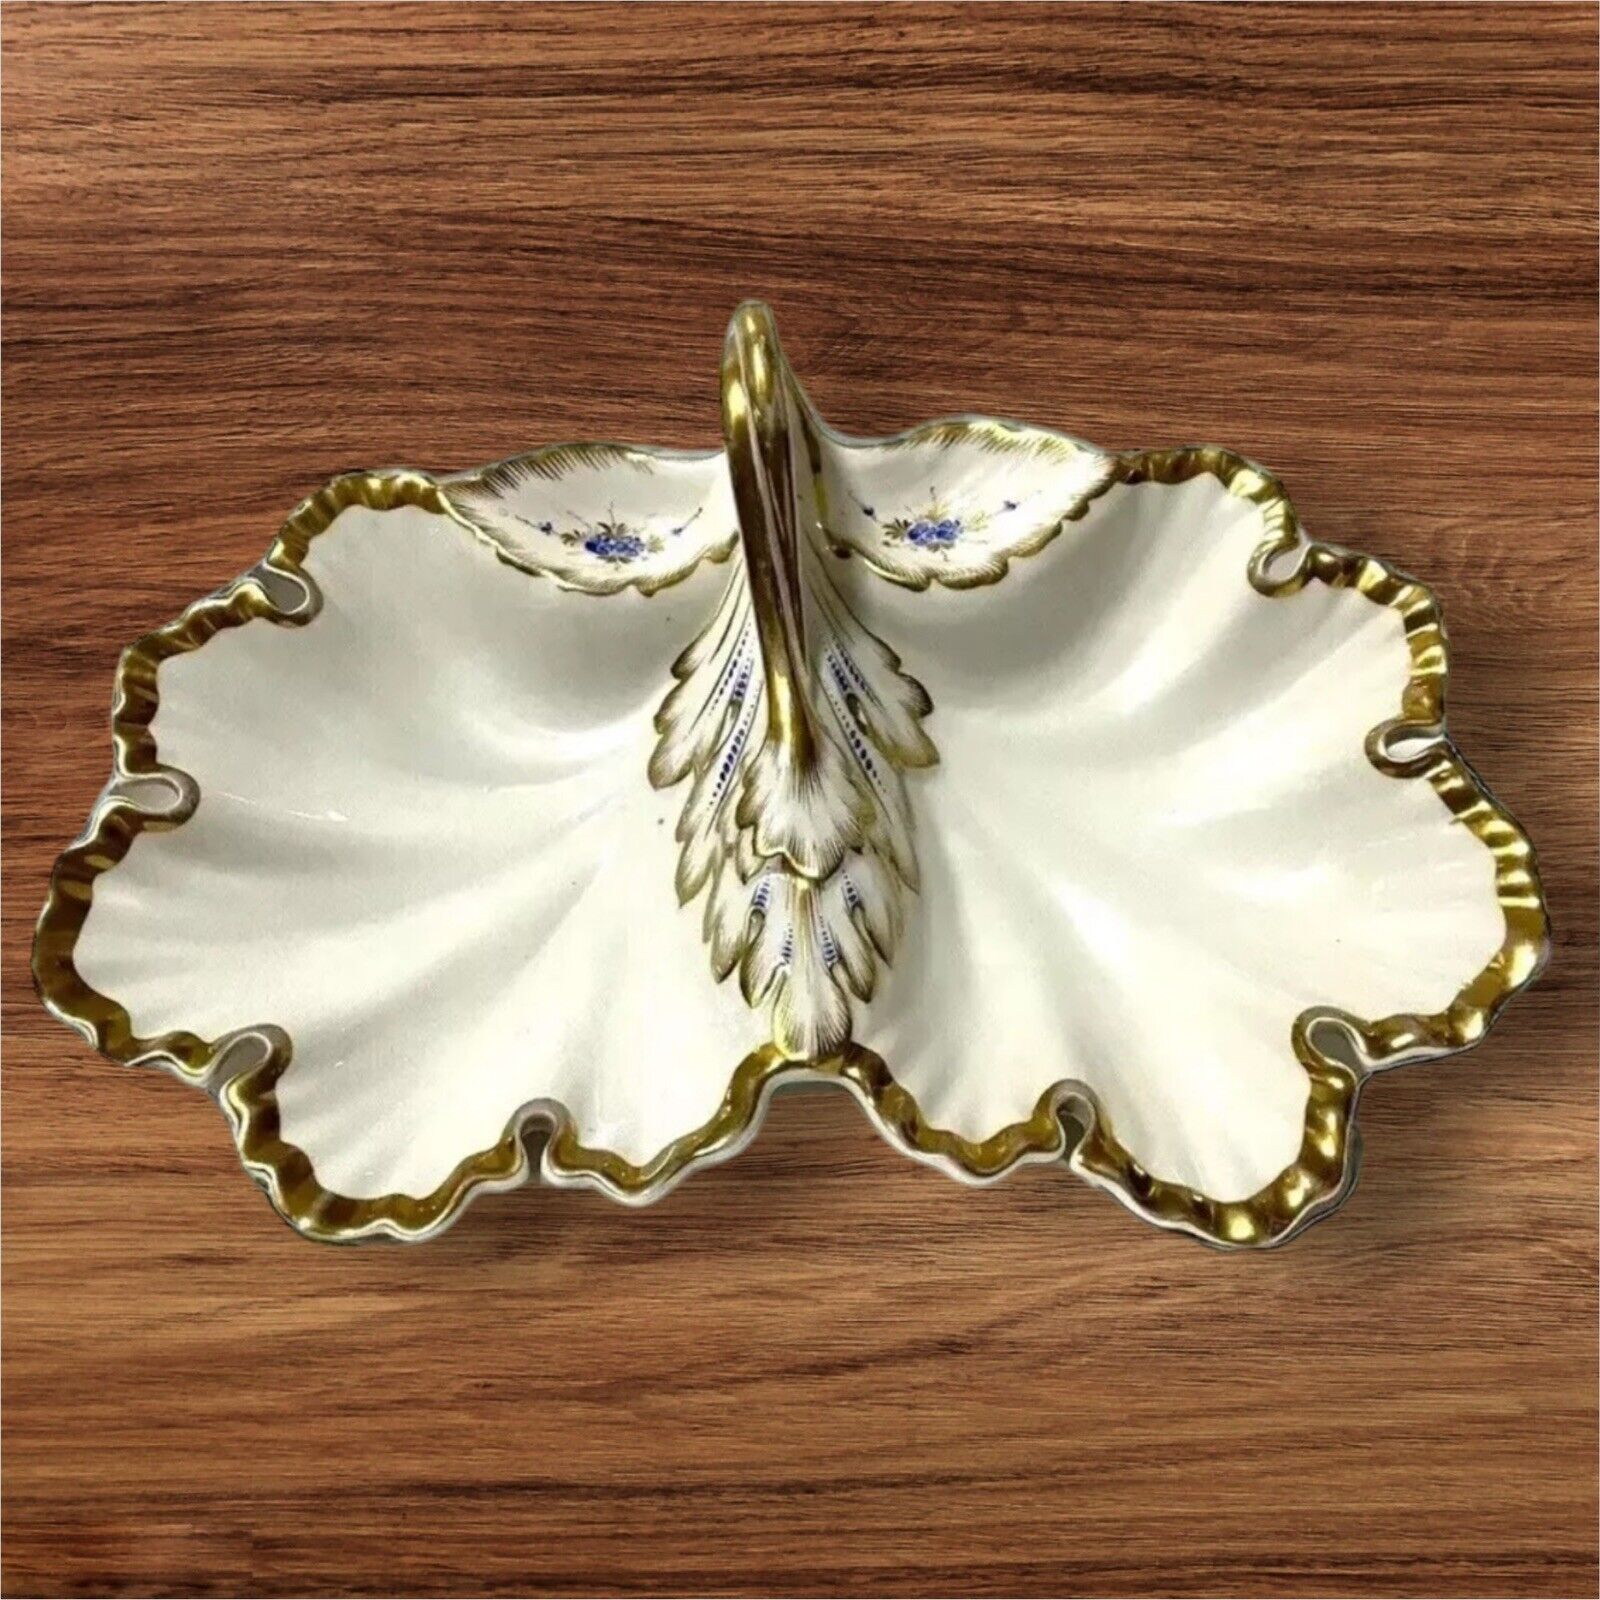 Antique CT Carl Tielsch Porcelain Gold Trimmed Floral Divider Dish Plate Handle